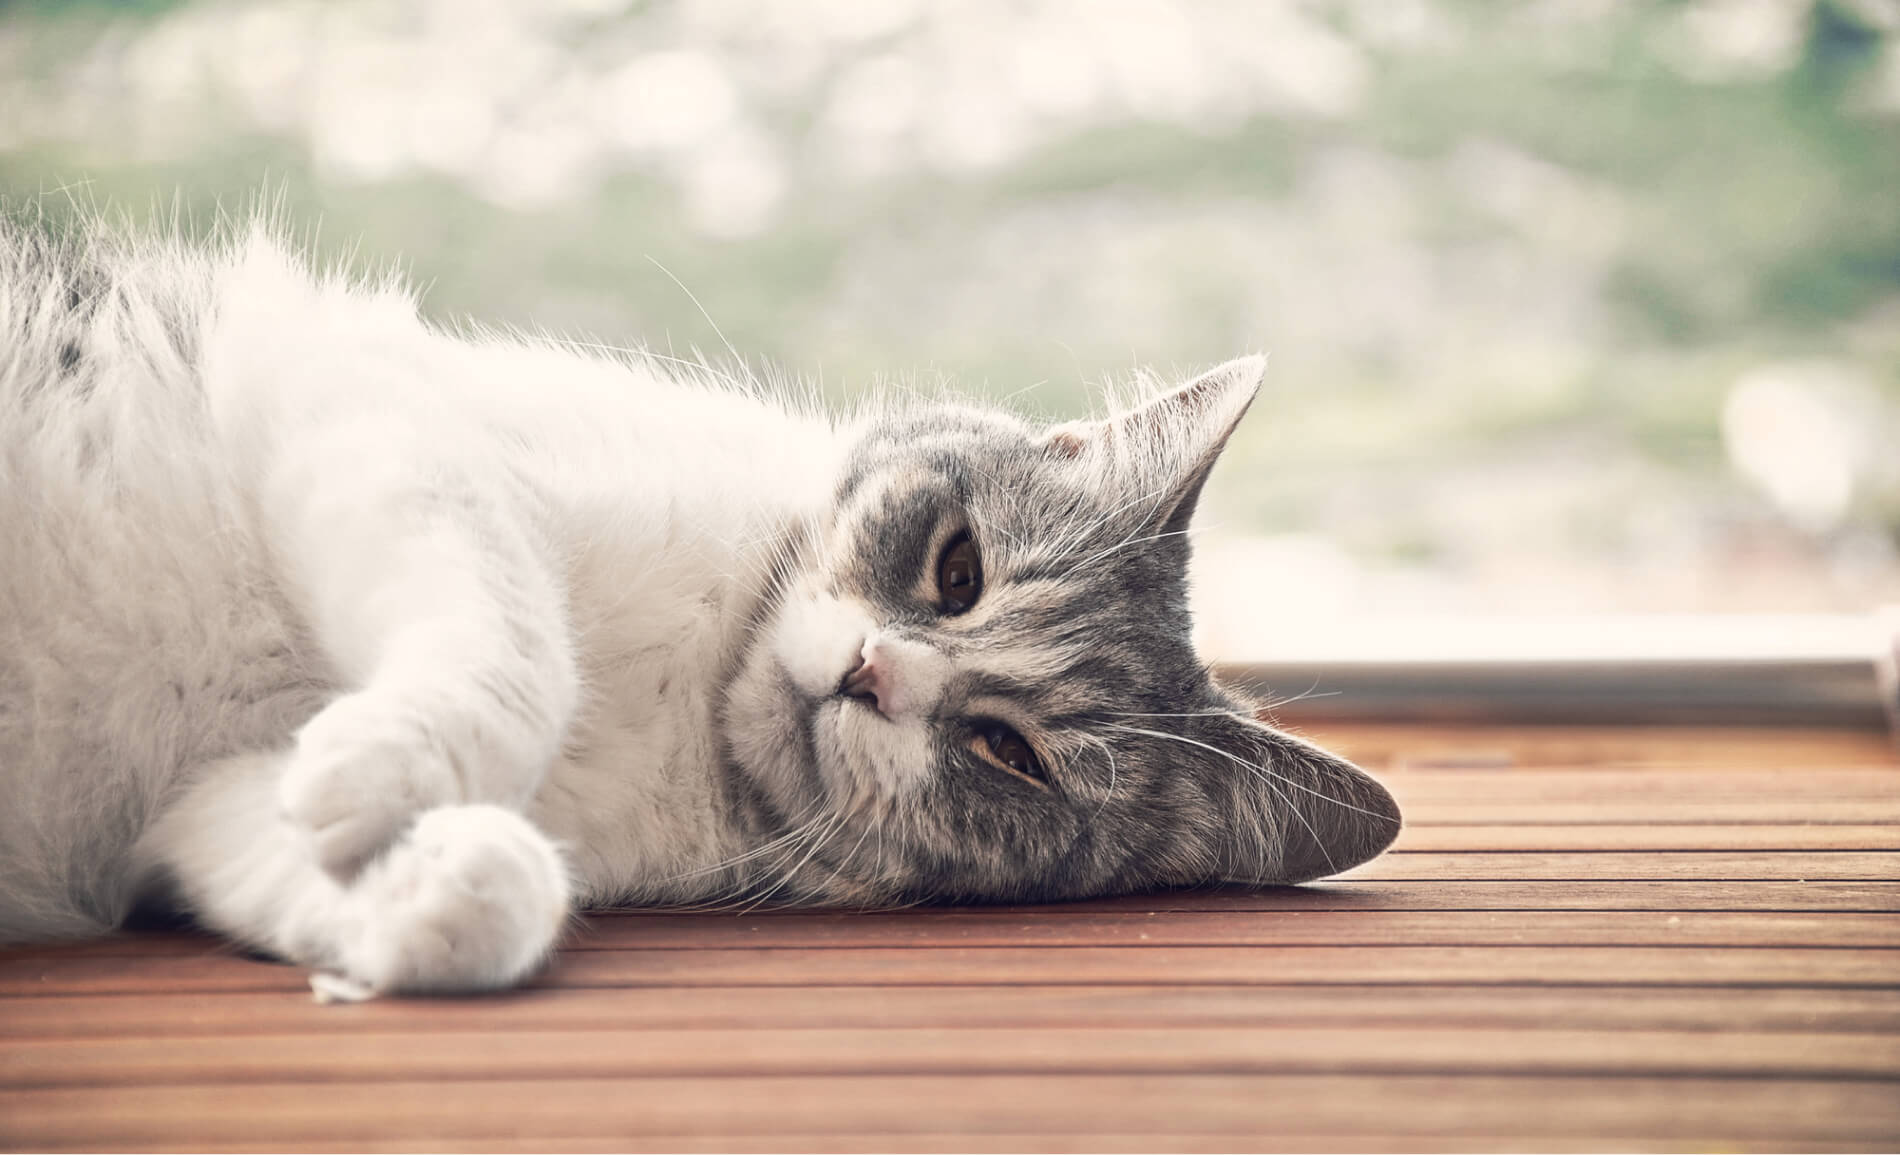 Le chat vomit de la mousse : causes et conseils pour les propriétaires inquiets